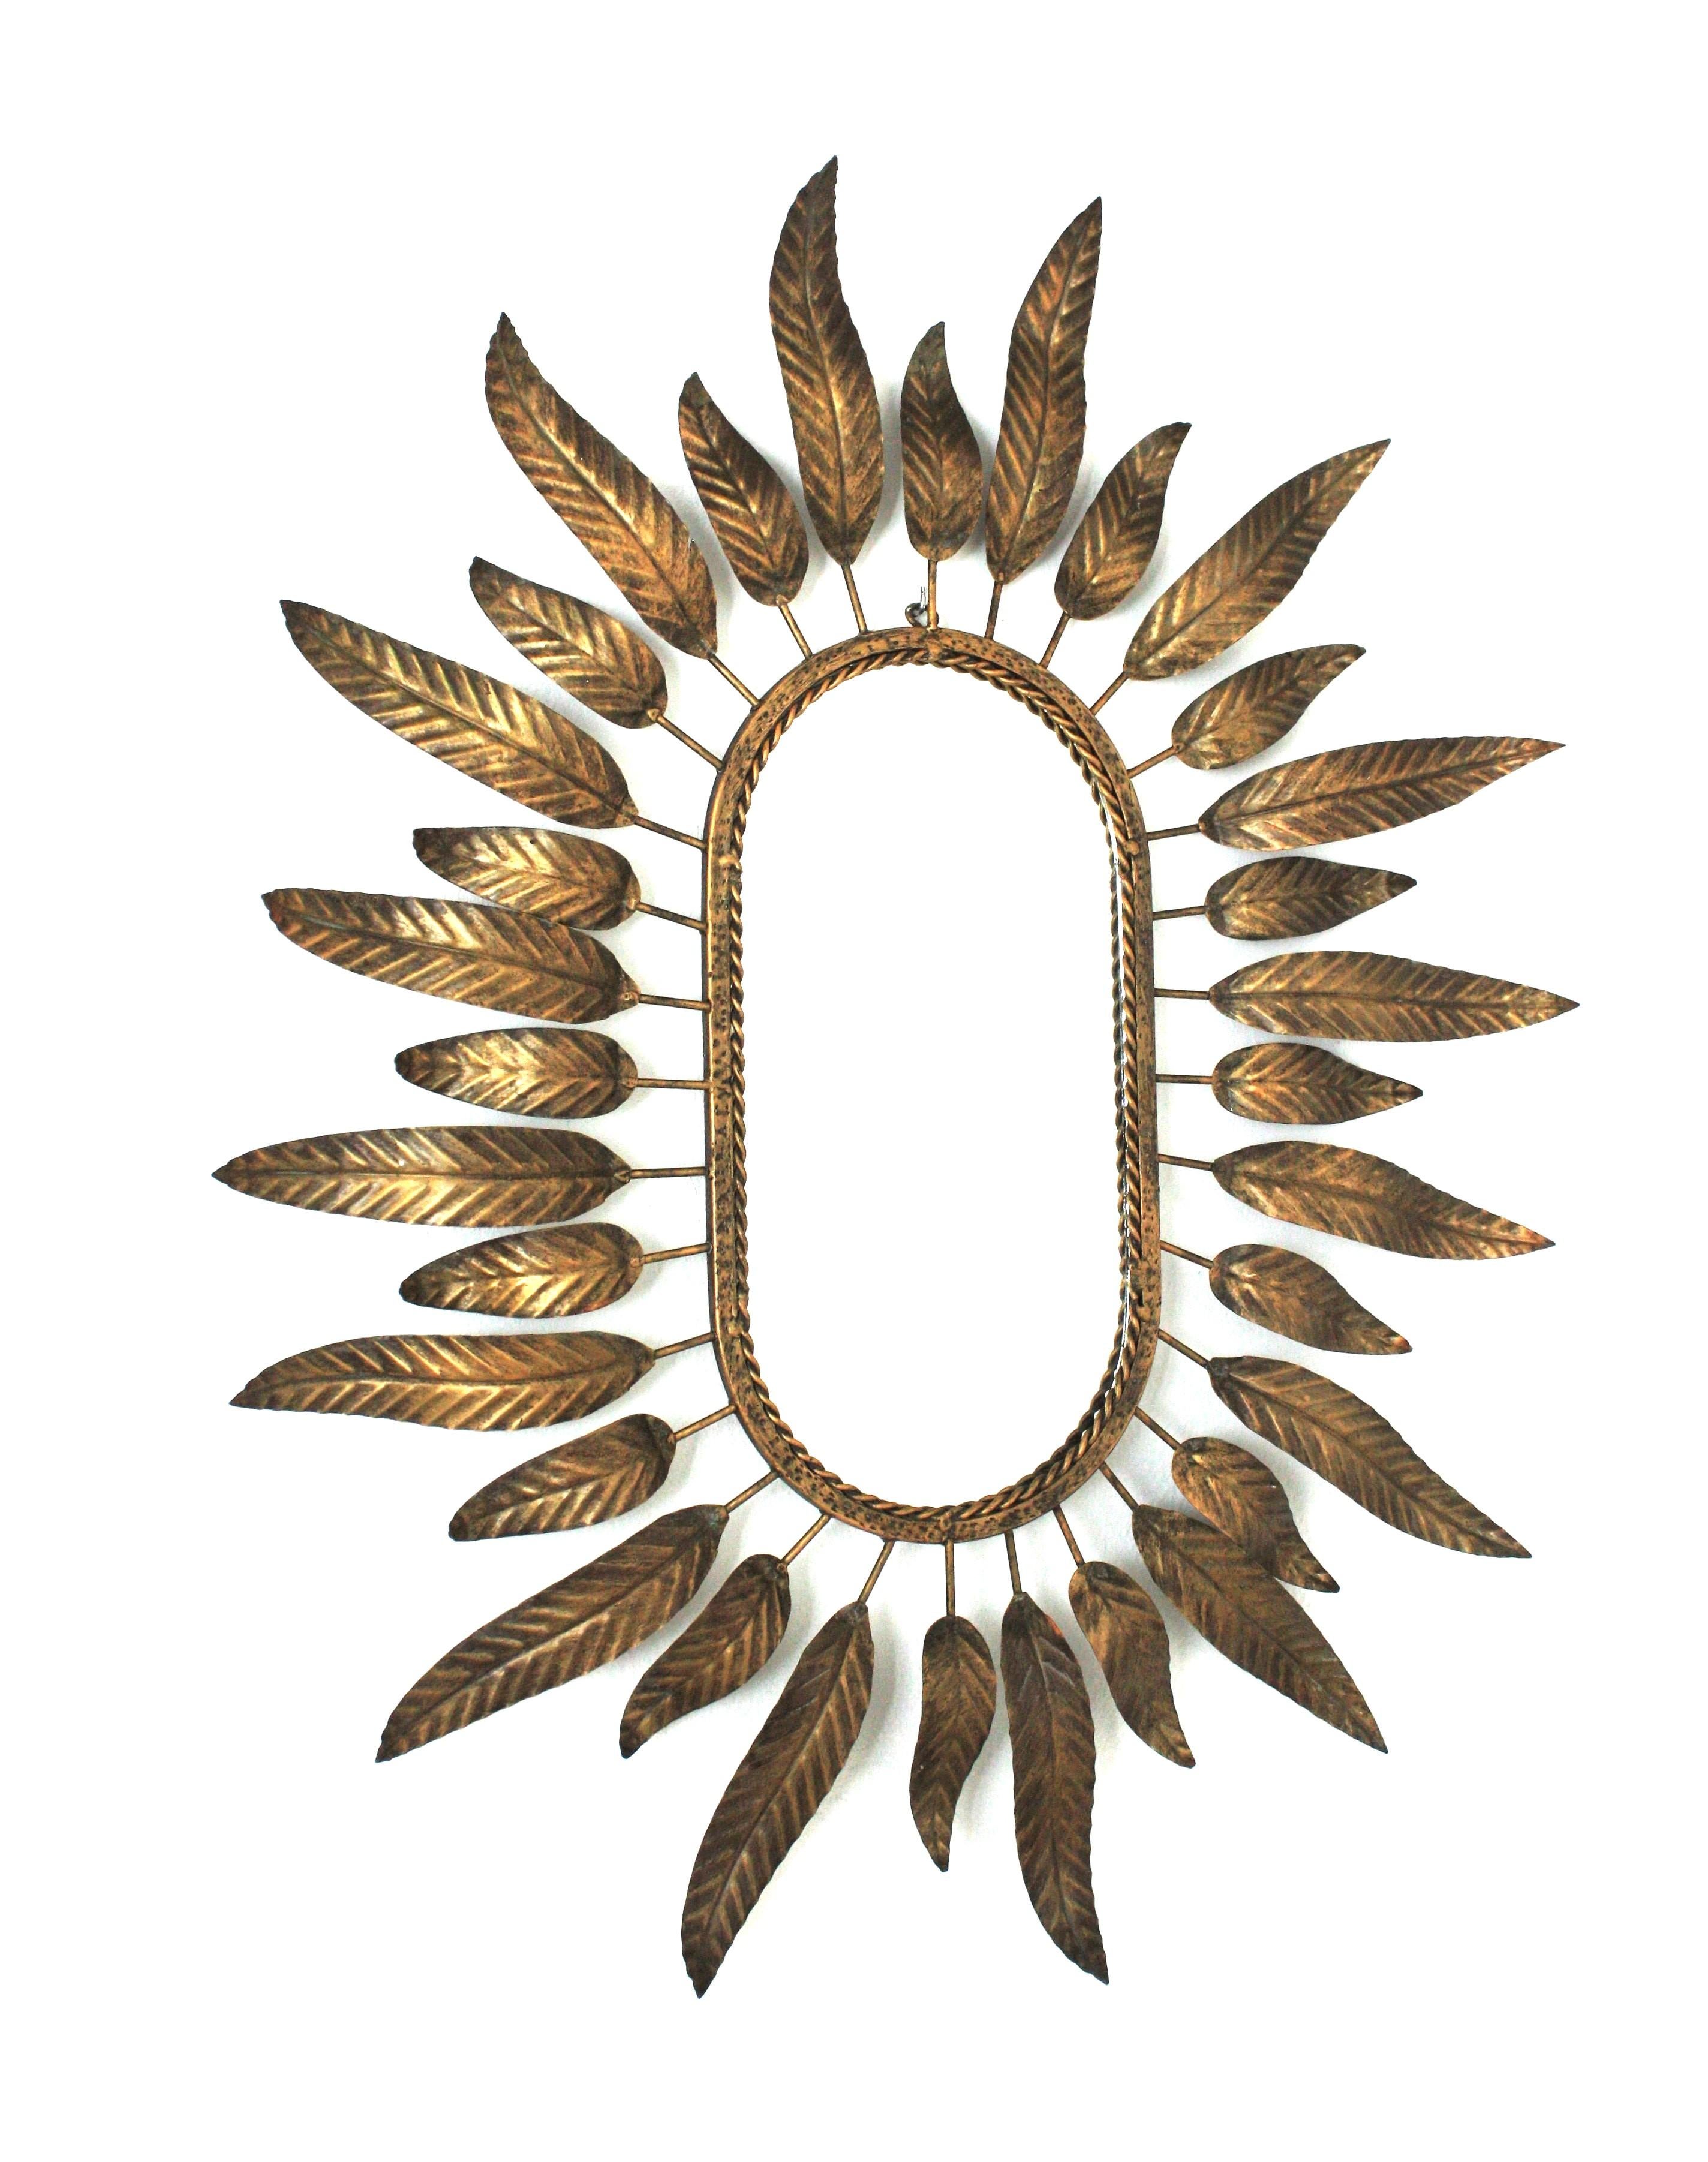 Spiegel mit Sonnenschliff aus vergoldetem Metall, umrahmt von Blättern. Spanien, 1950er-1960er Jahre.

Dieser stilvolle Spiegel kombiniert Midcentury- und Hollywood-Regency-Akzente: ein hochdekorativer ovaler Spiegel mit Sonnenschliff und